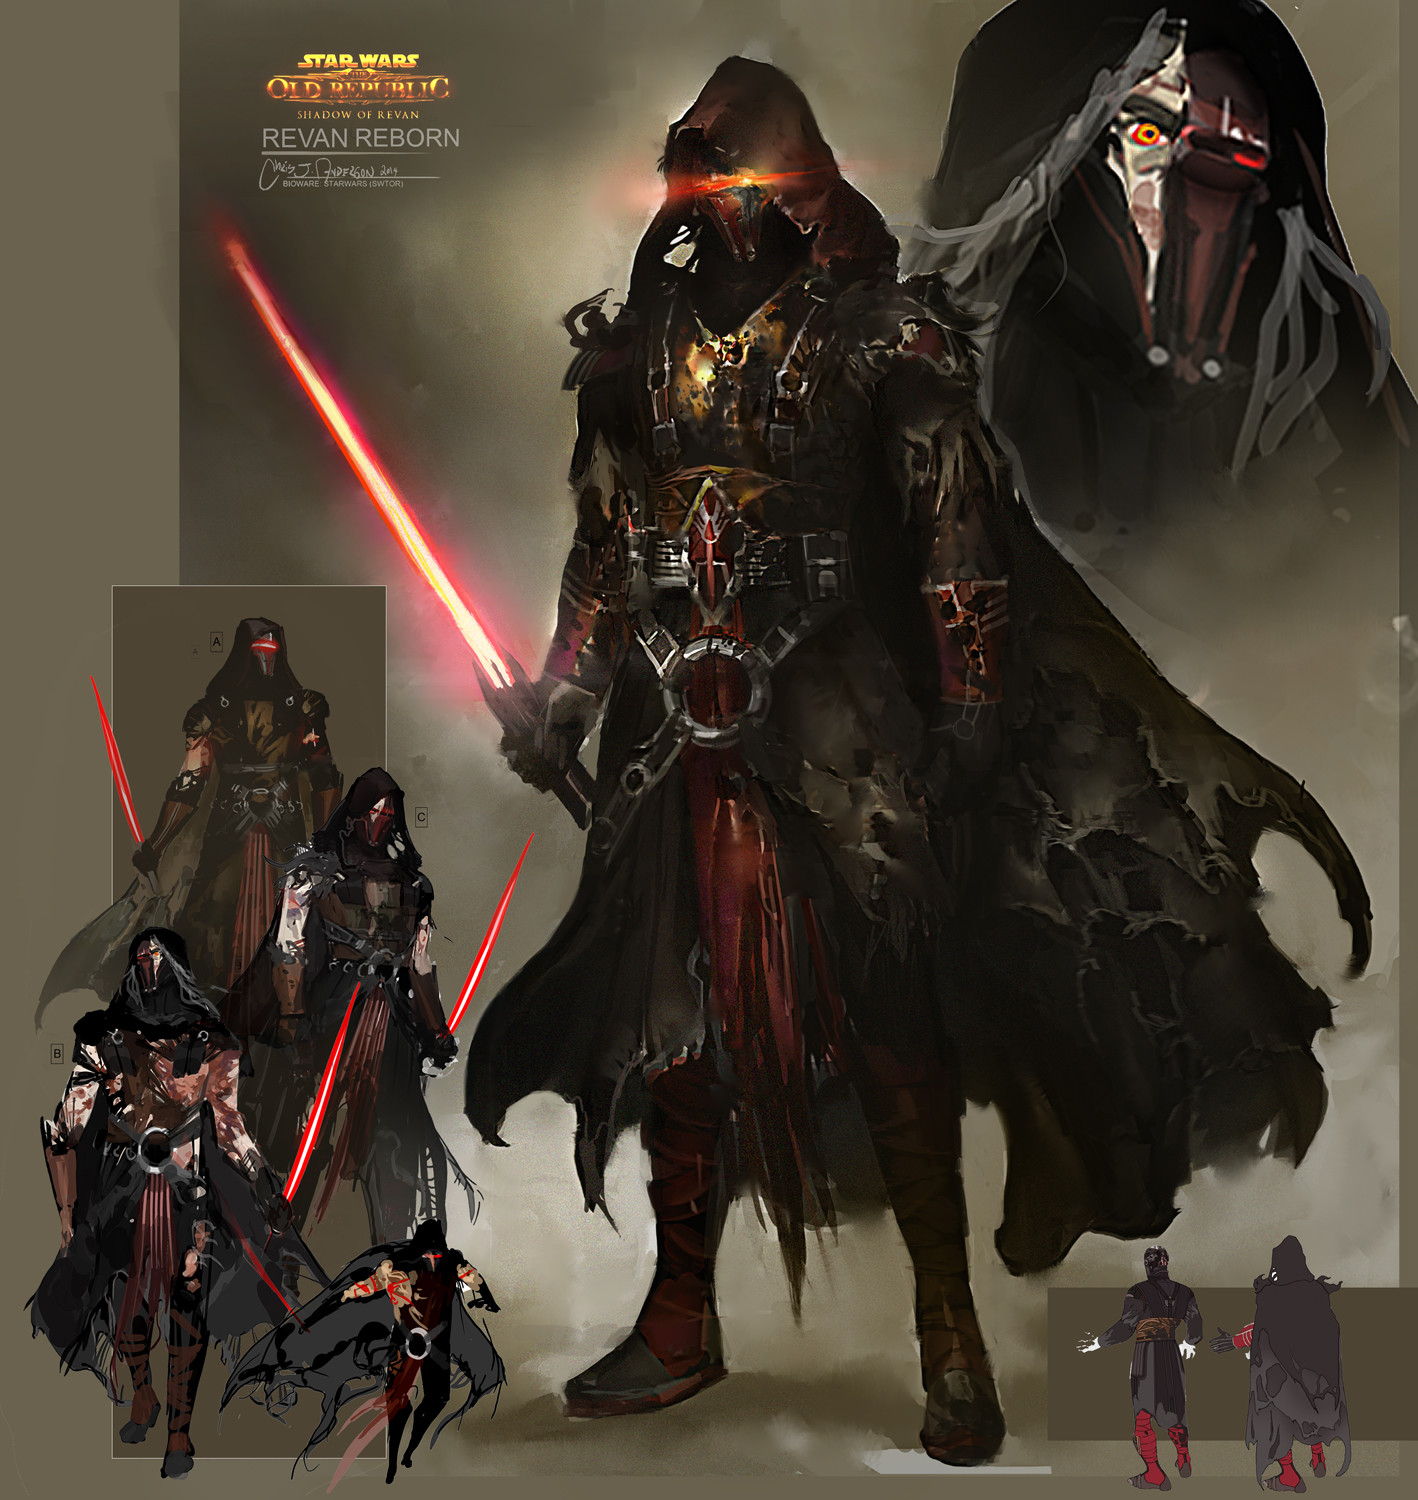 Darth Vader vs Meetra Surik - Page 5 Chris-anderson-038-revan-reborn